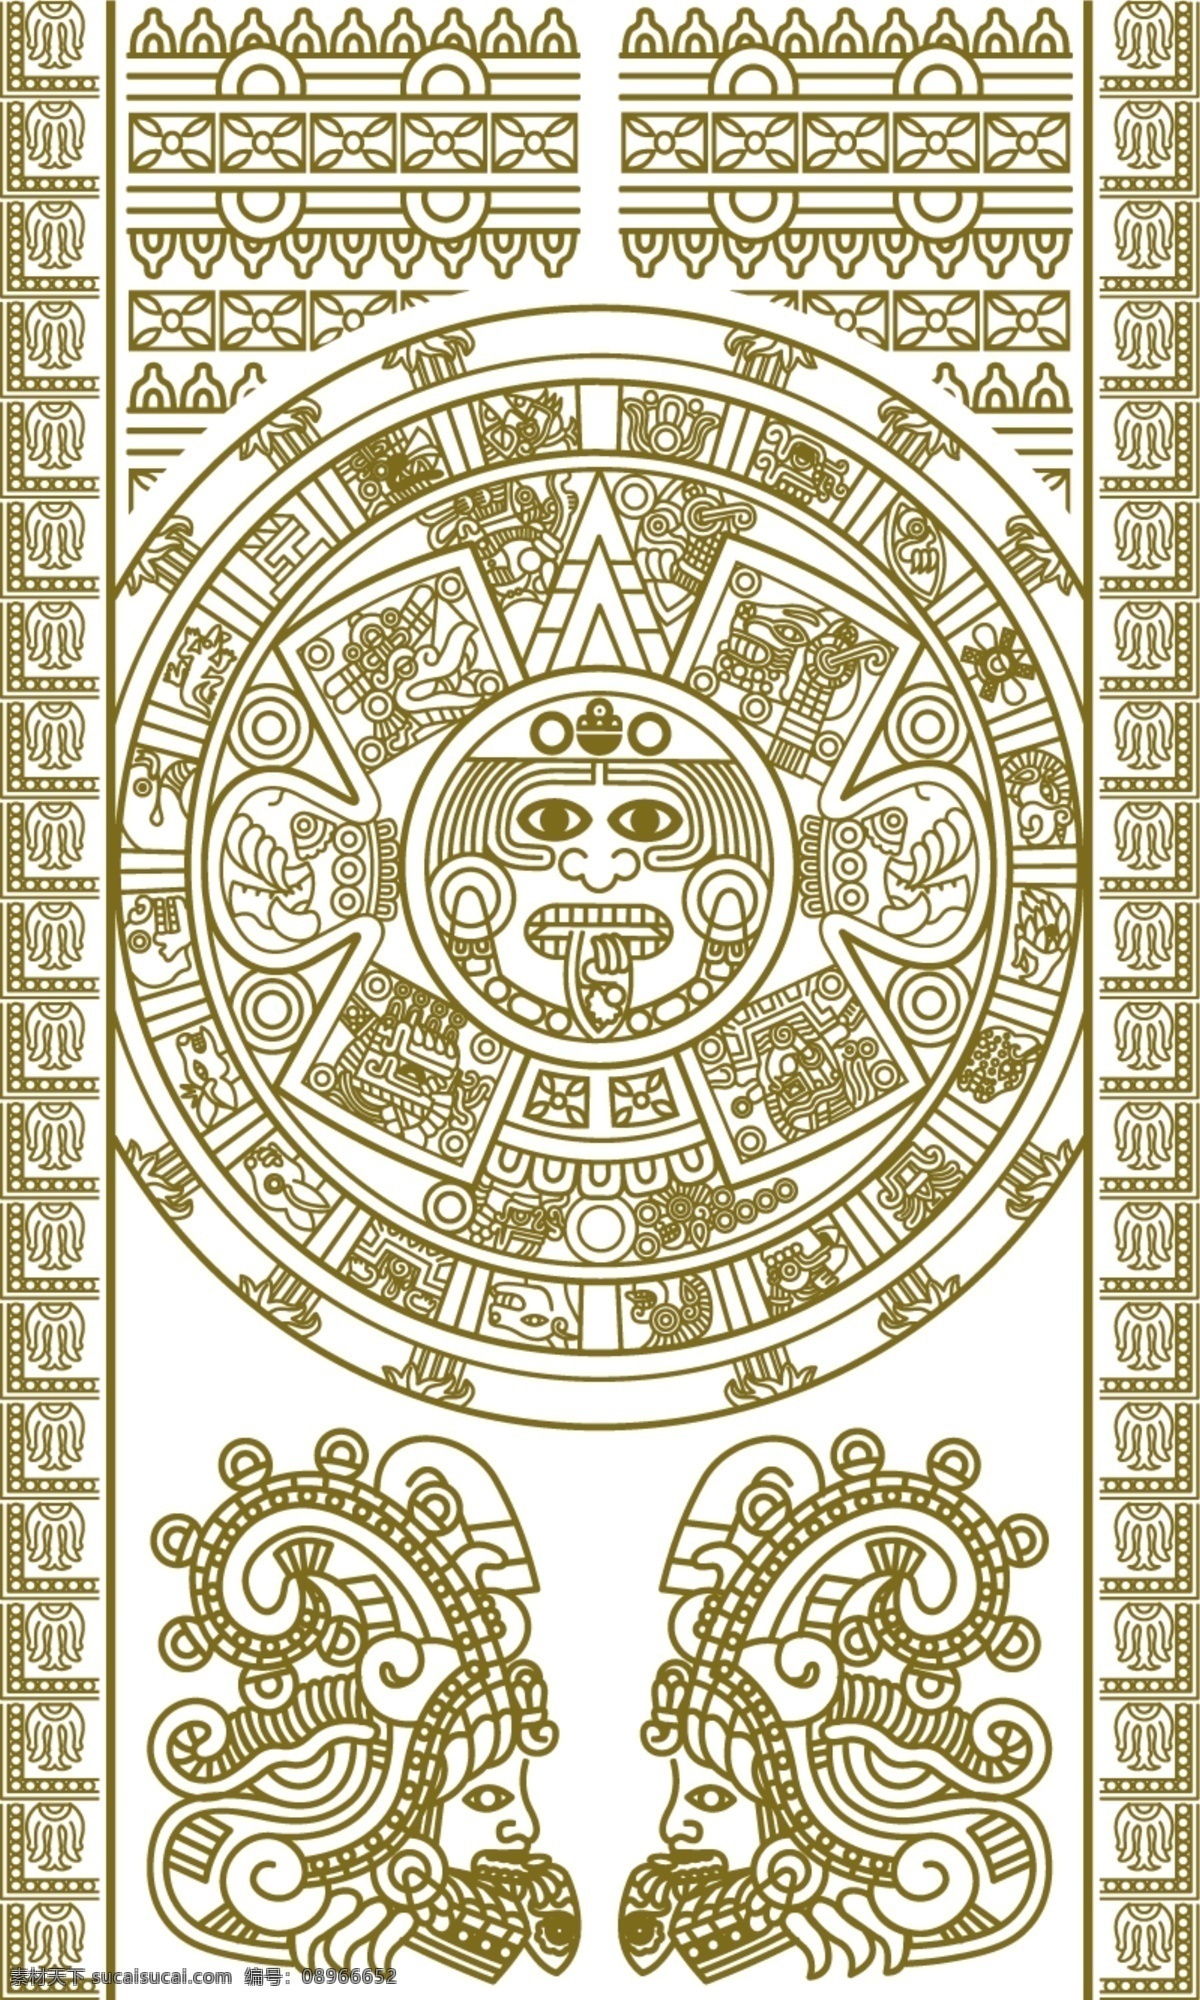 玛雅历法盘 玛雅符号 玛雅纹身 玛雅 古代 古老 手绘 图腾 考古图案 太阳 法盘 金色 玛雅历 平面素材